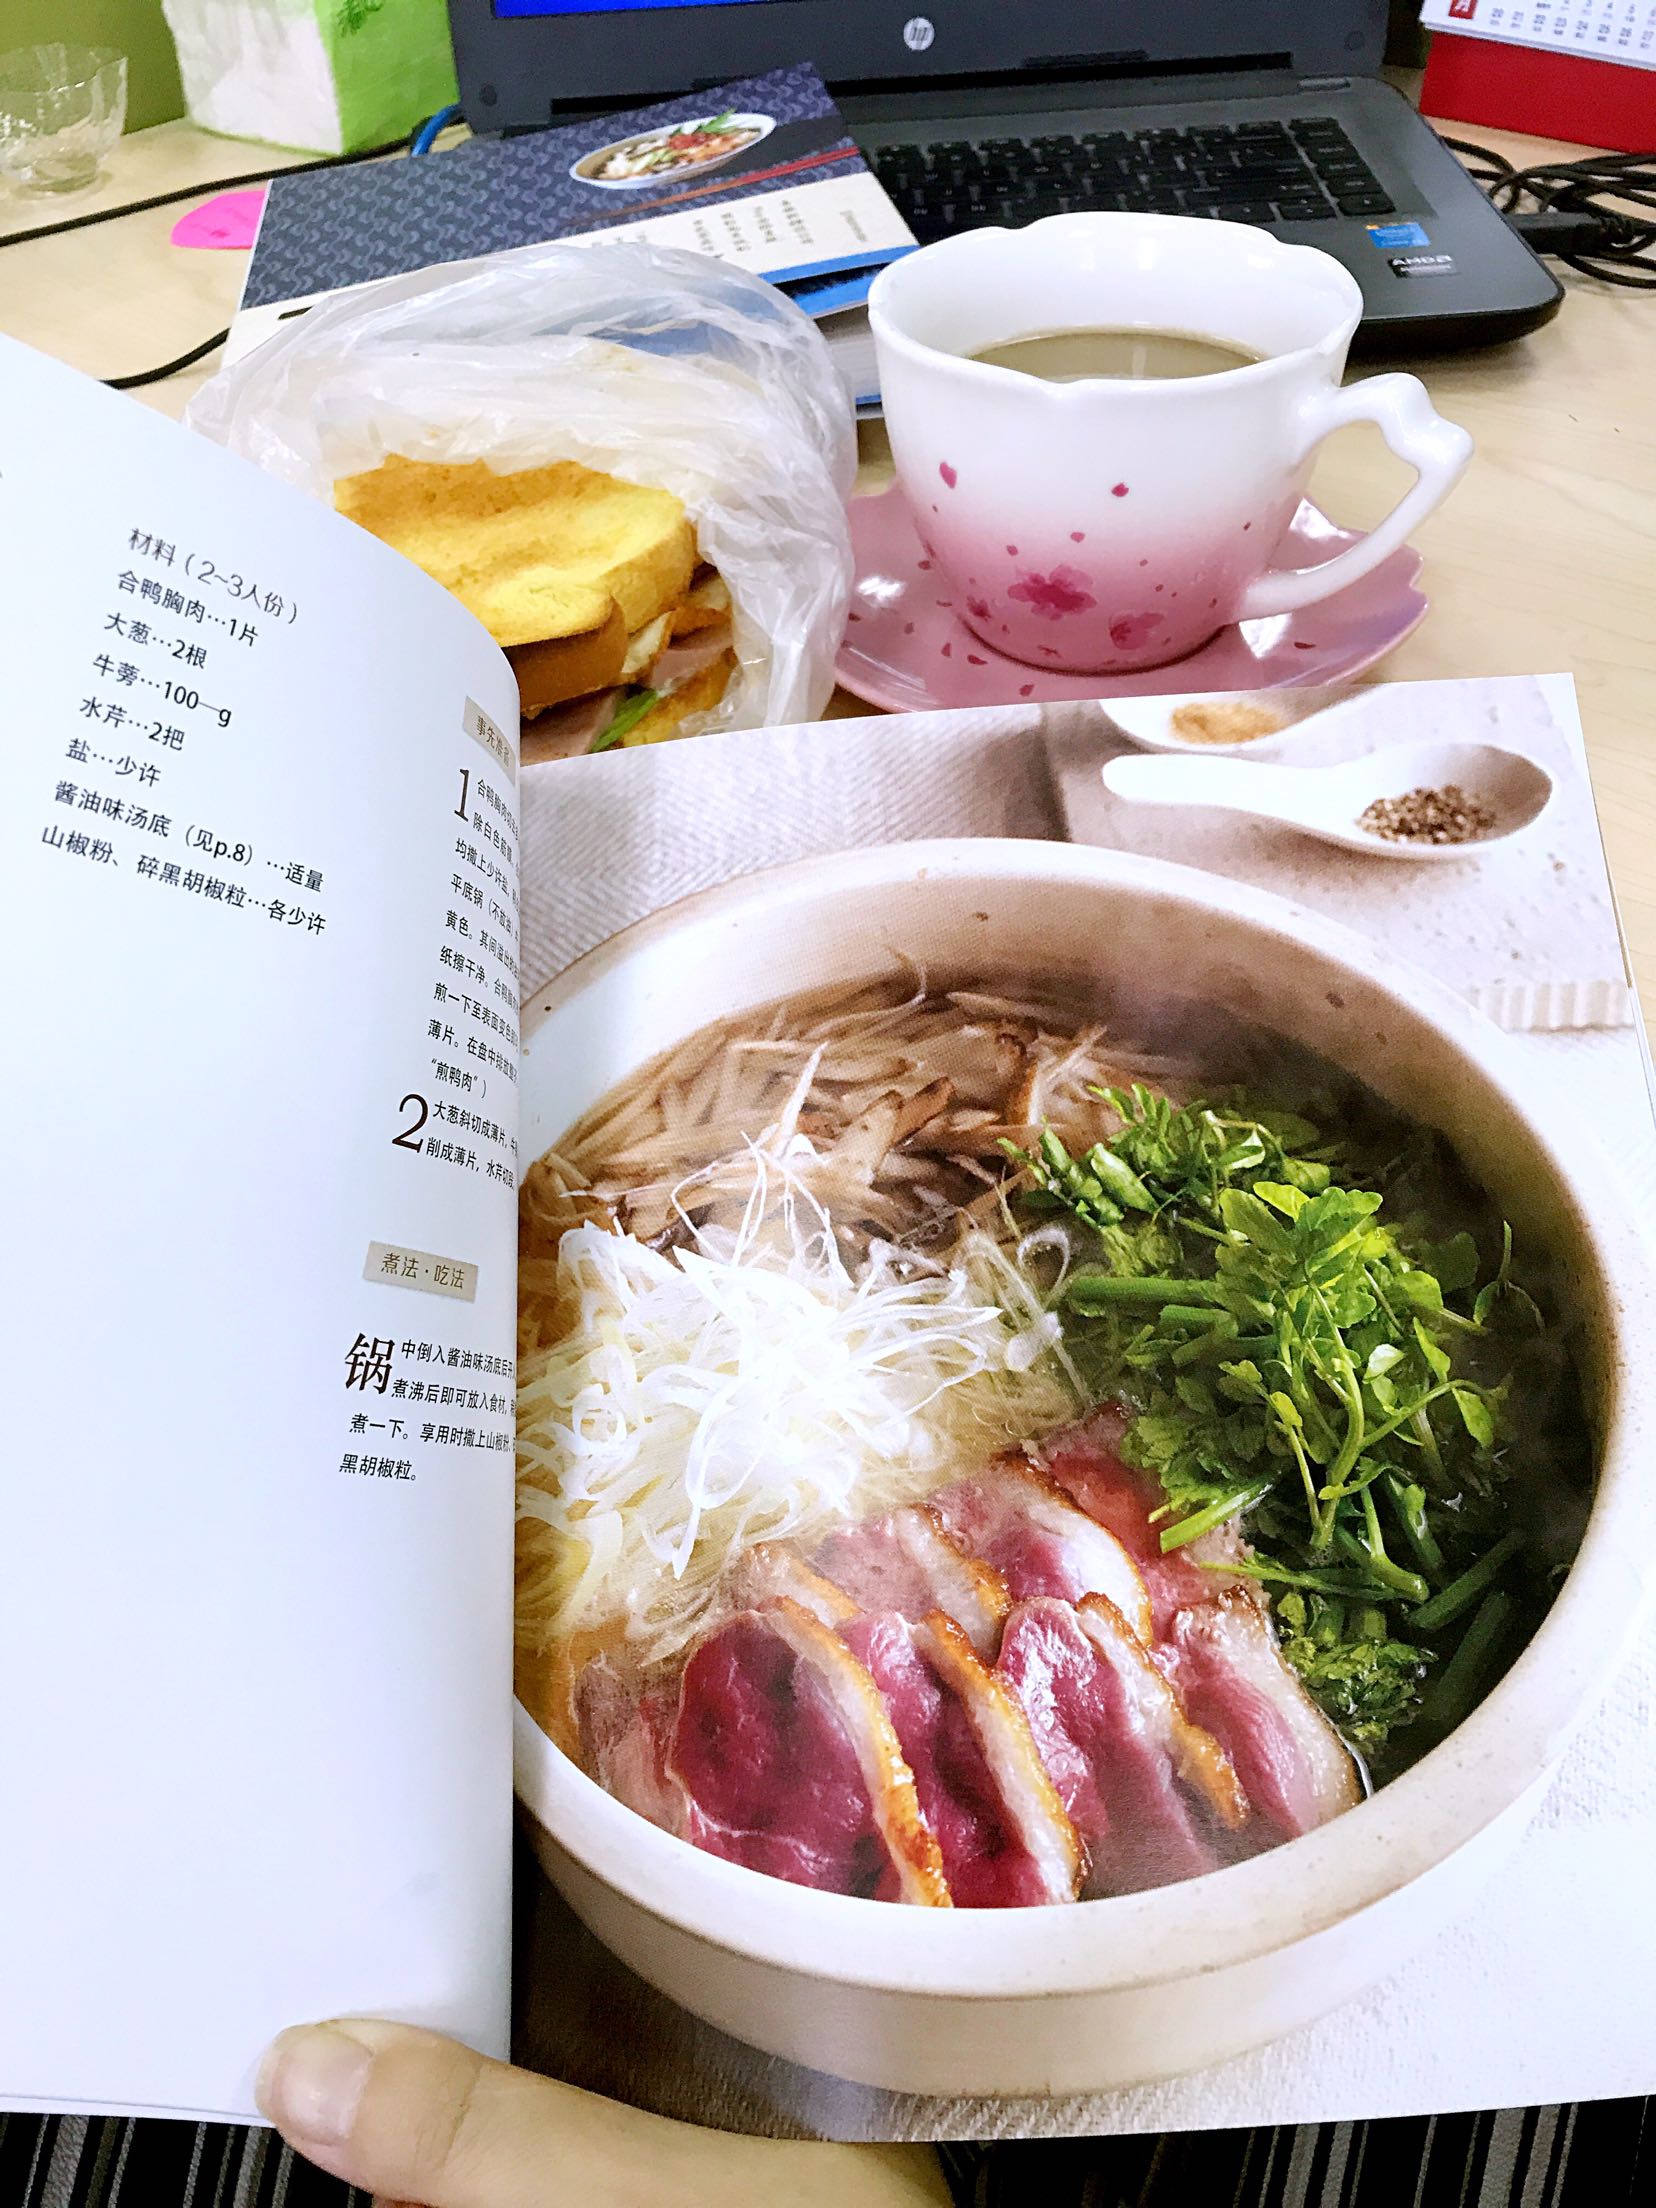 非常实用的书，让我对锅物料理有了进一步了解。